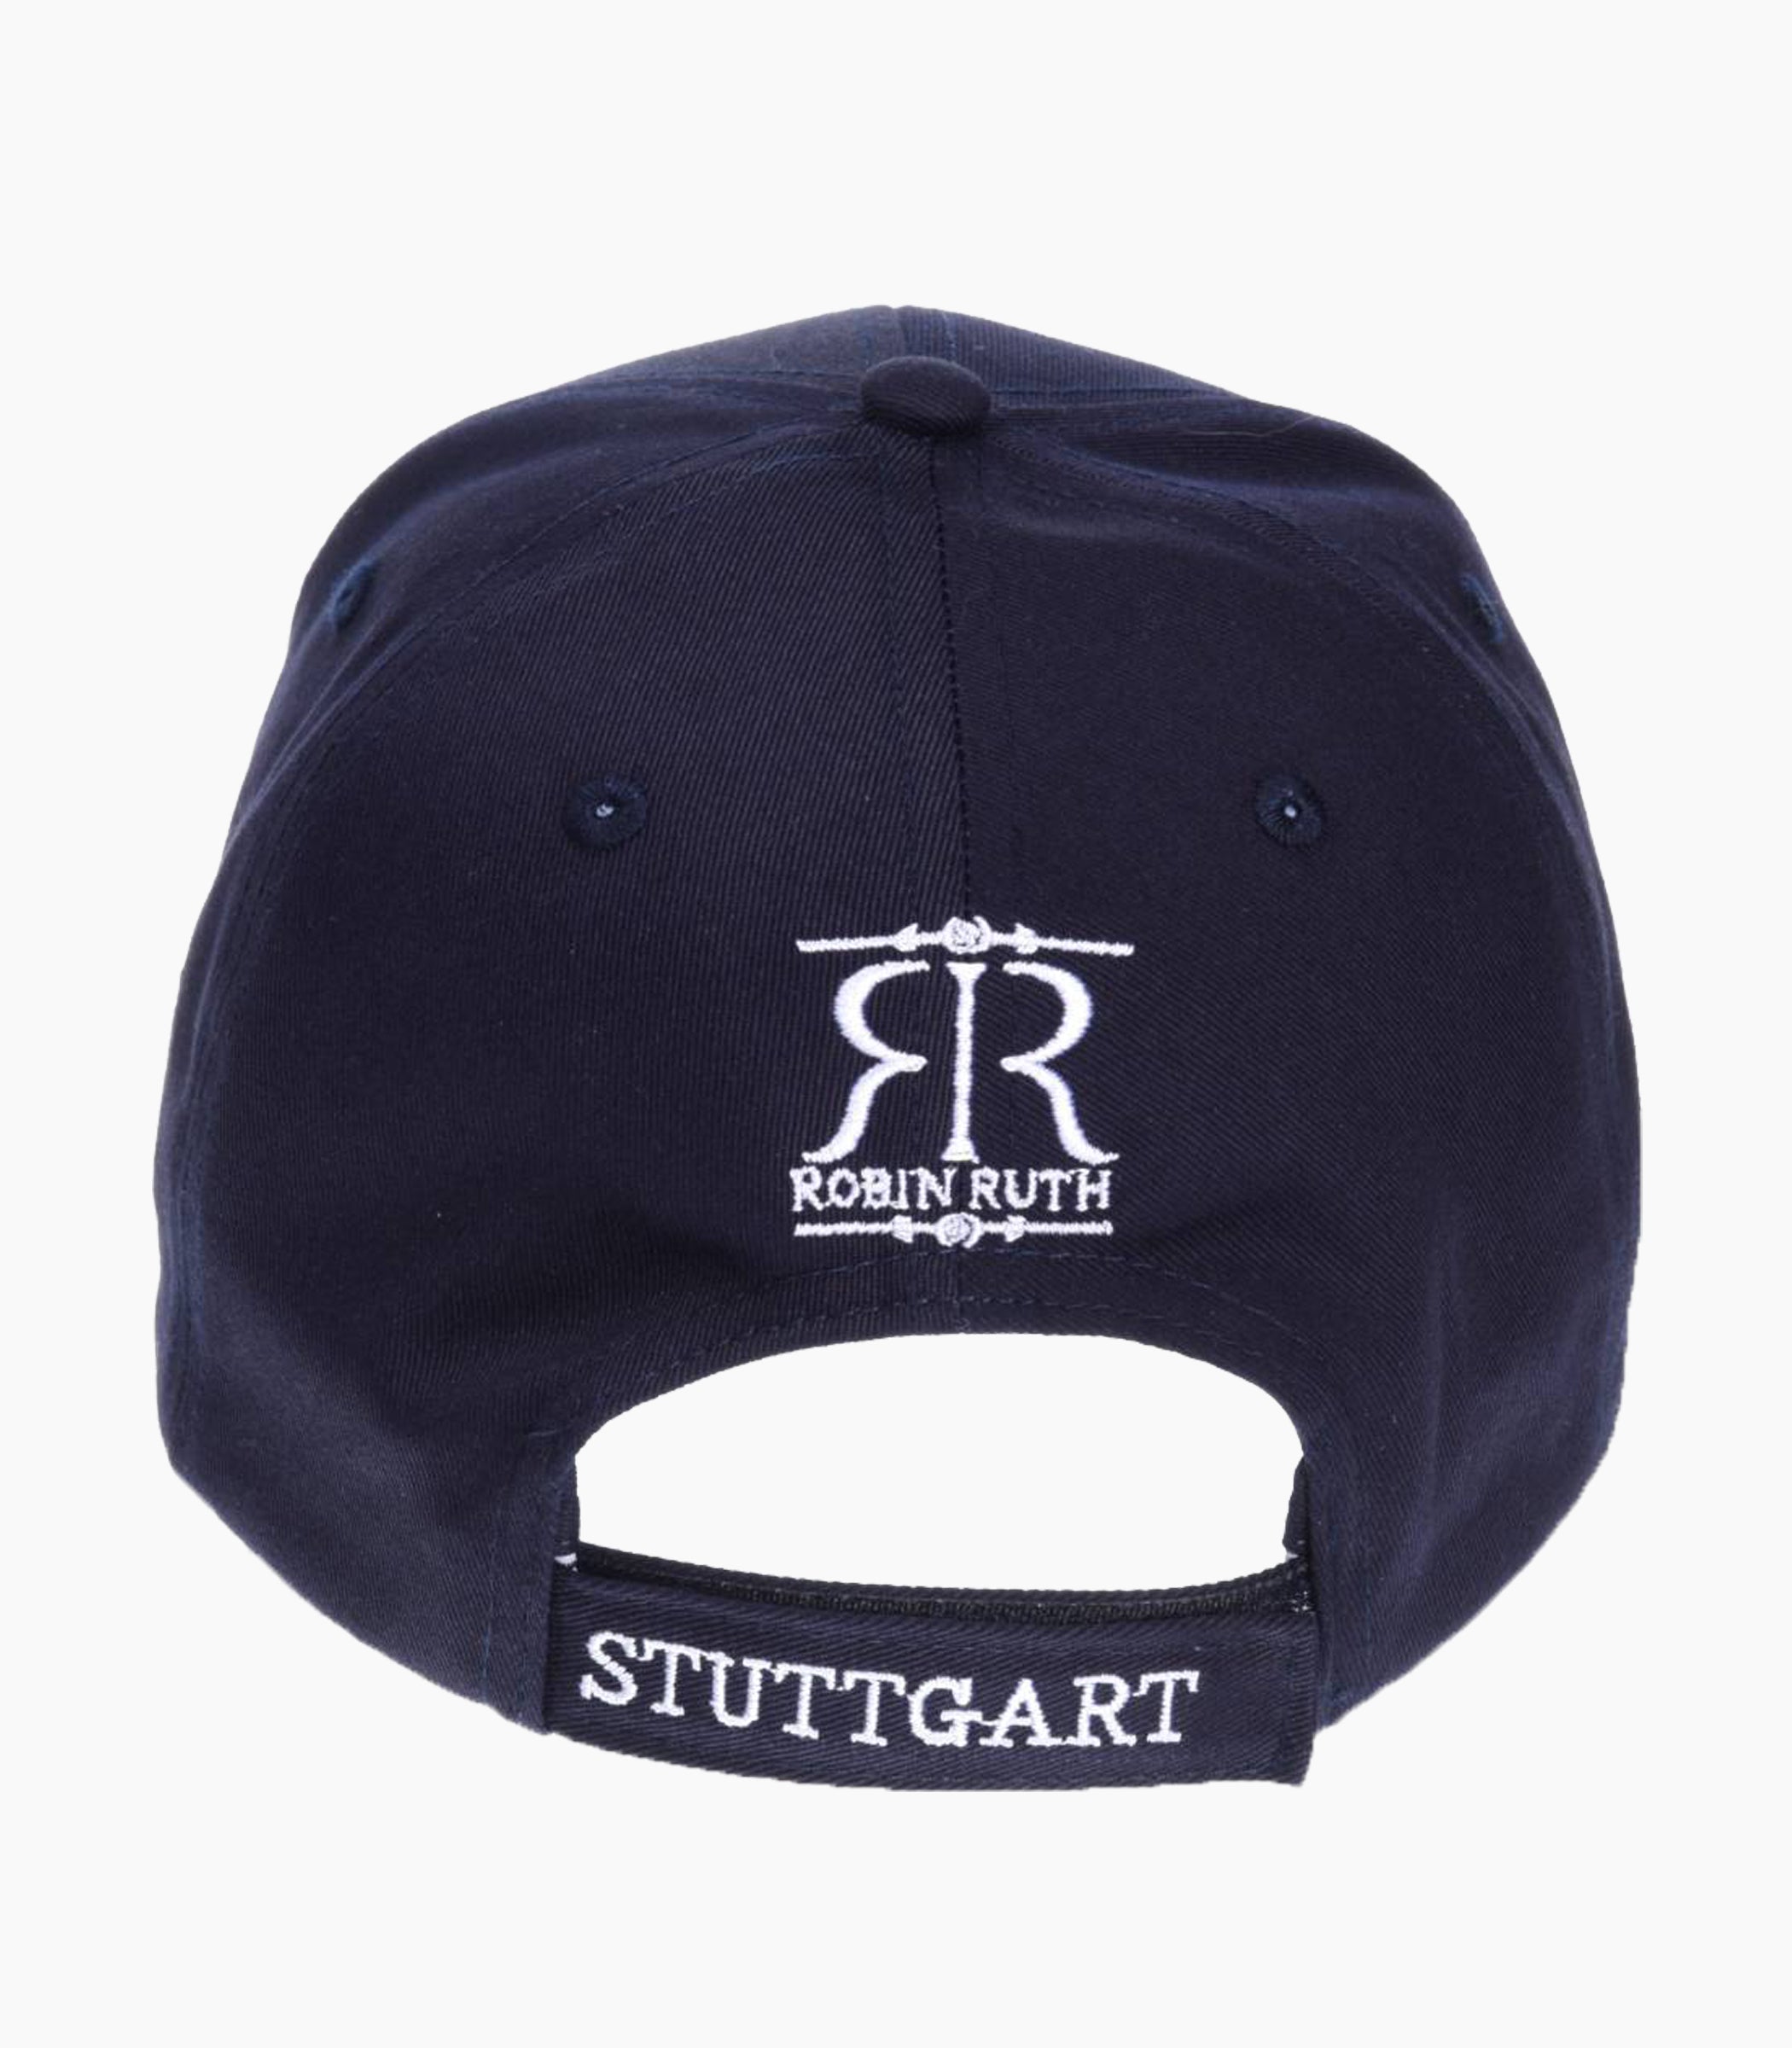 Stuttgart Cap - Robin Ruth